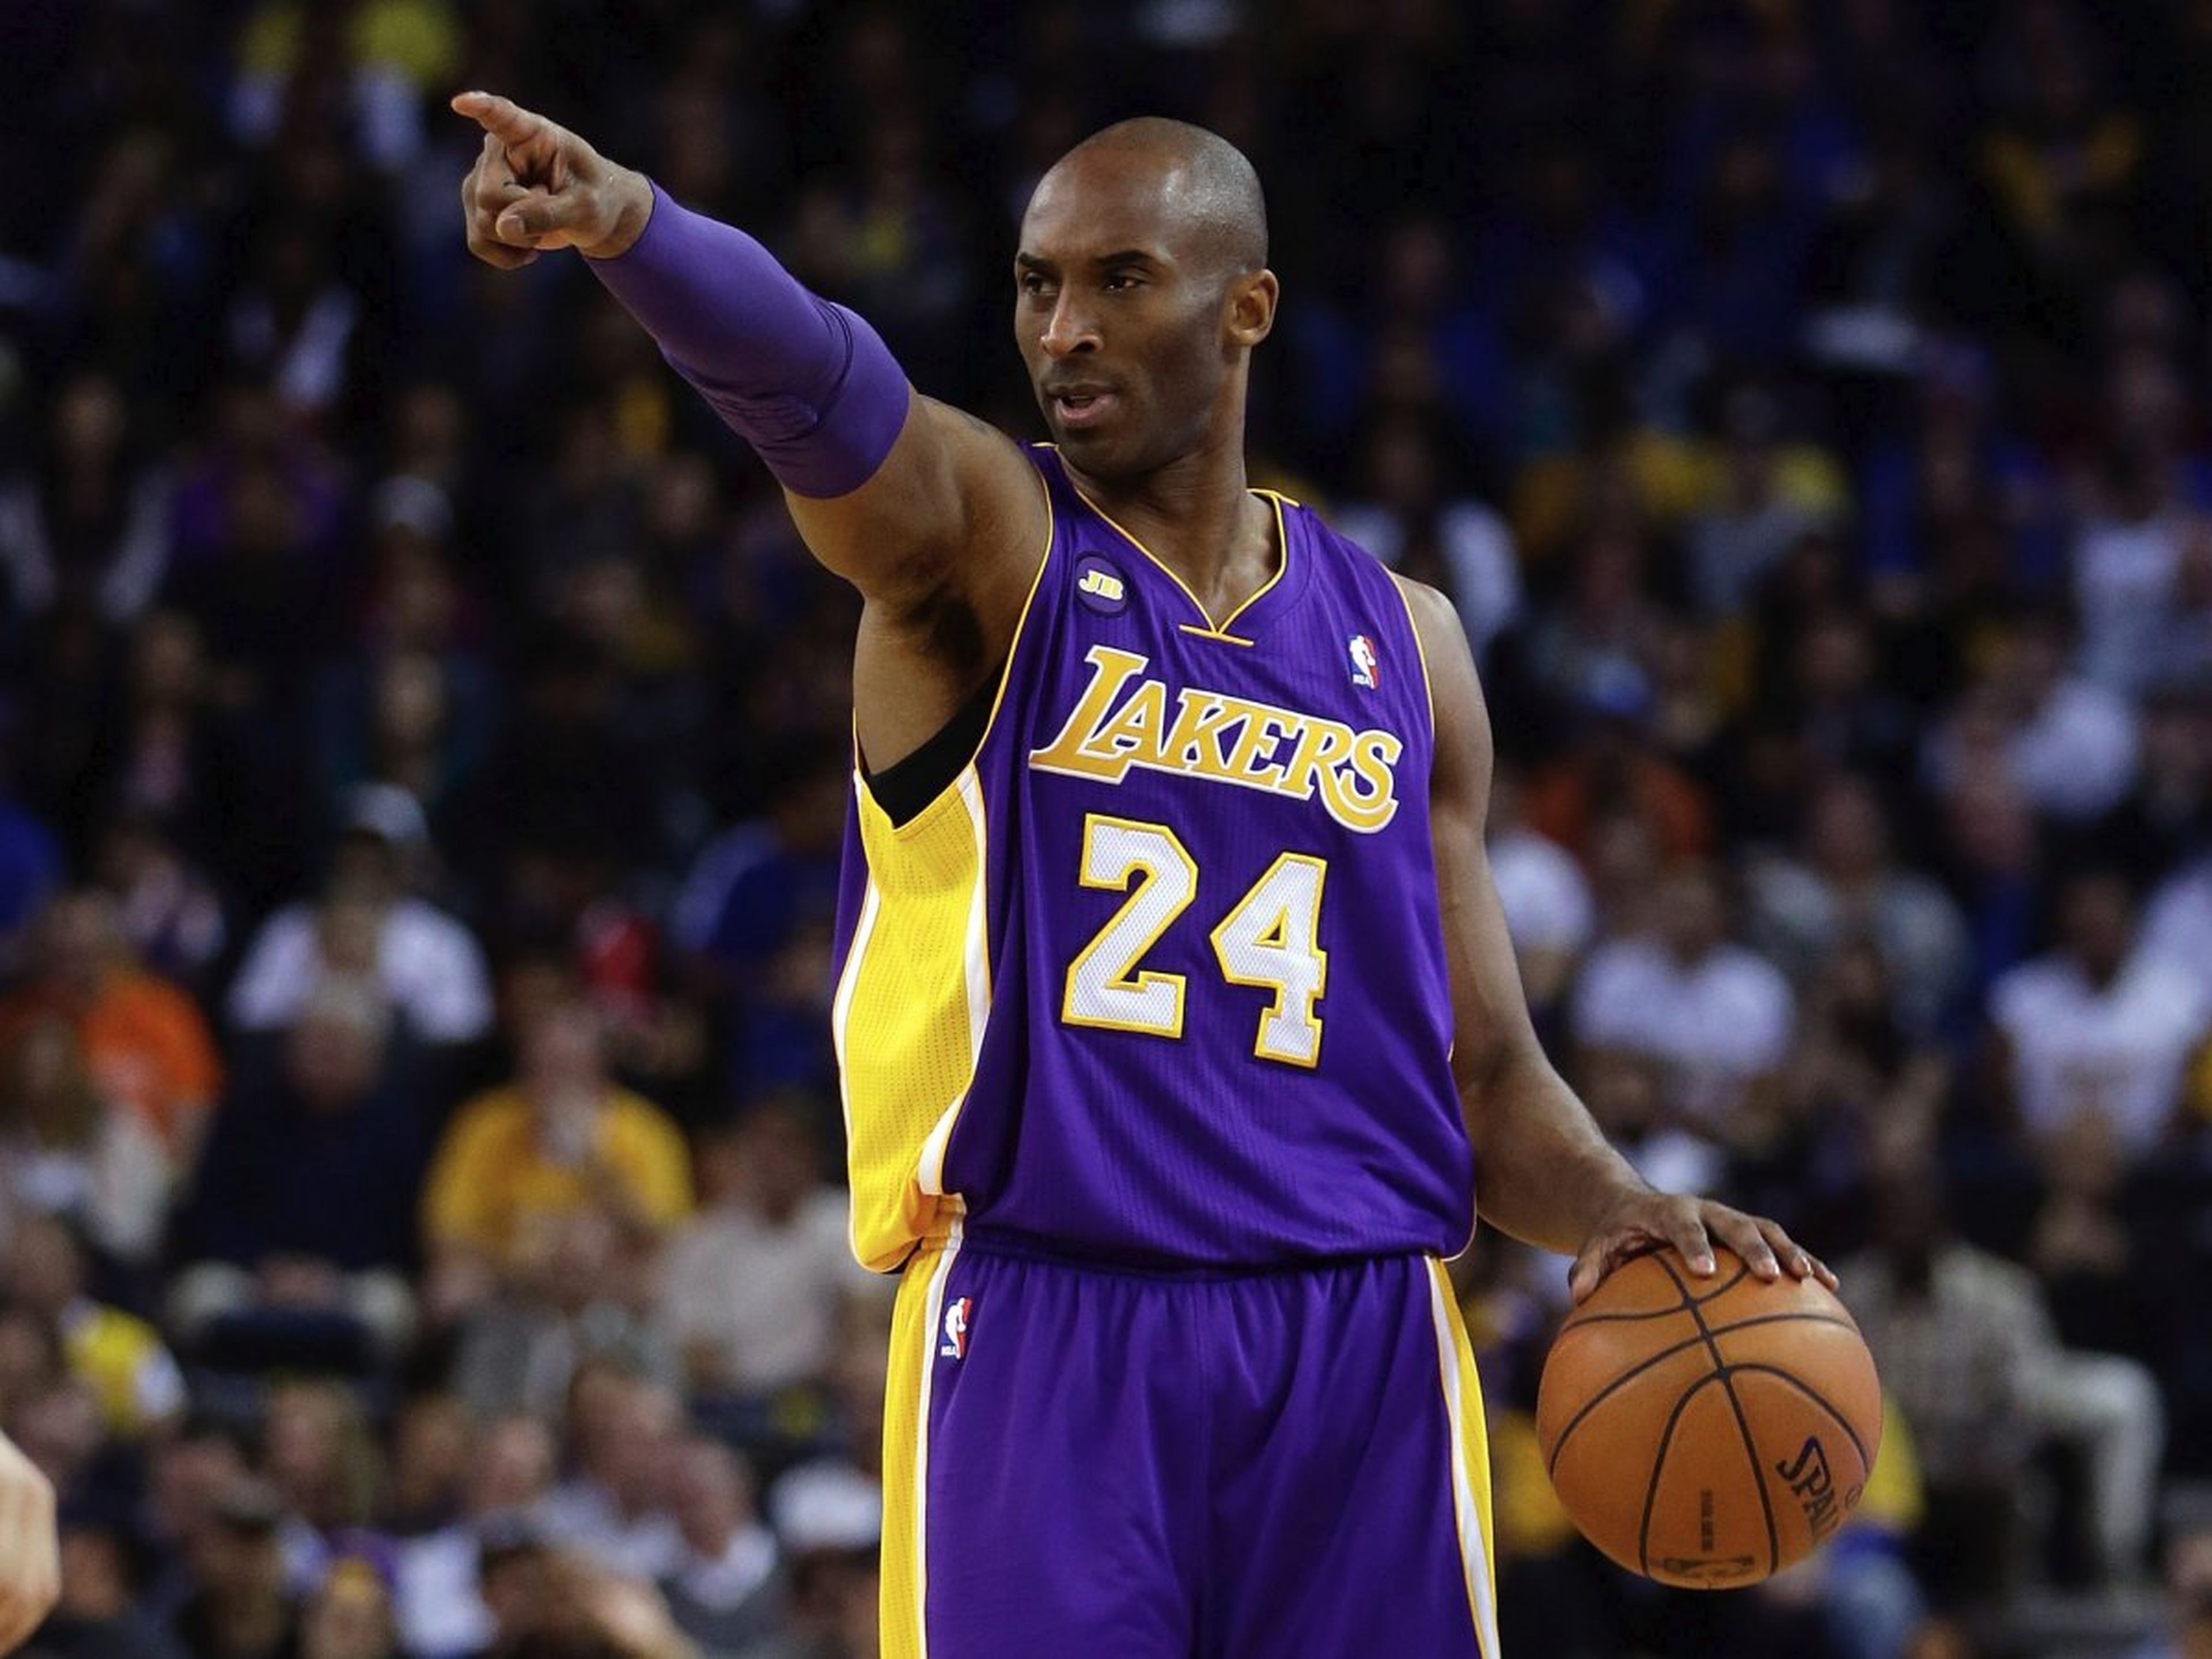 El jugador de baloncesto de la NBA Kobe Bryant en un partido de Los Angeles Lakers.